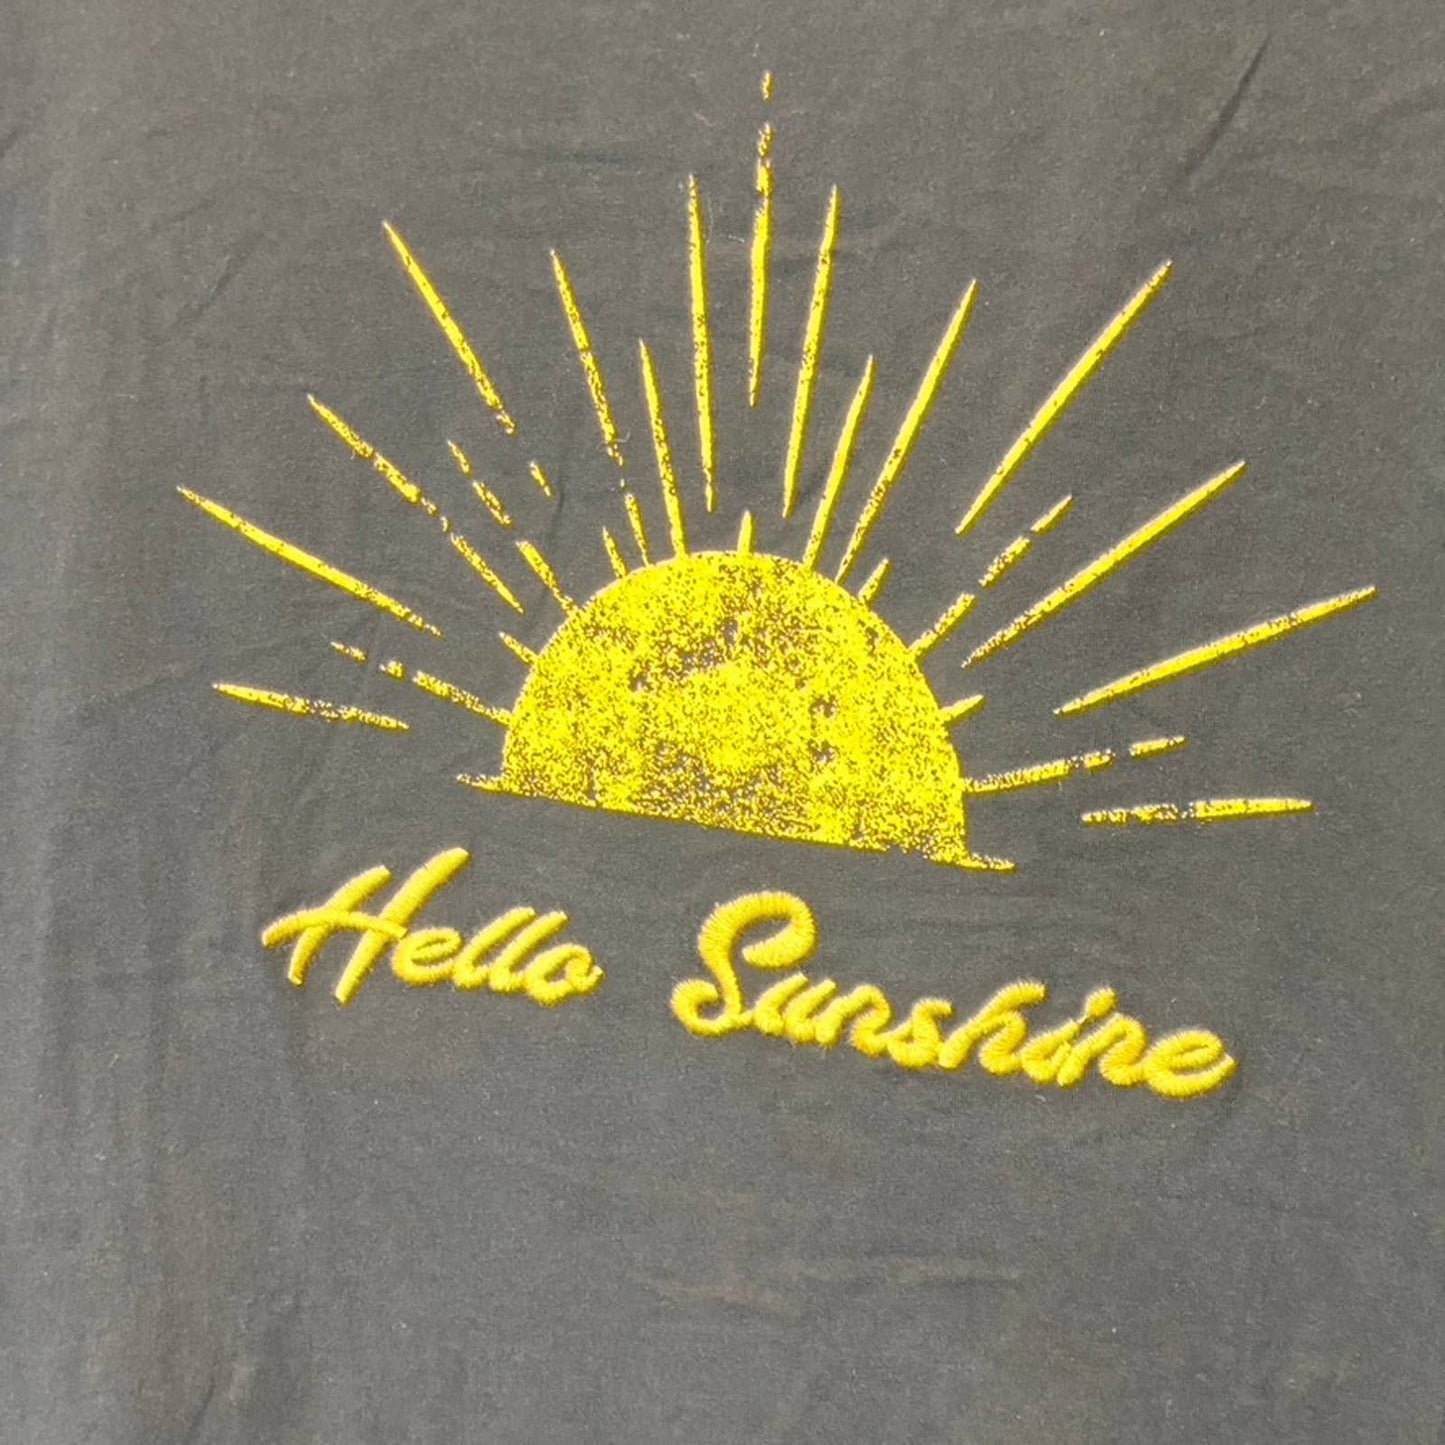 DR2 Women's Plus Black "Hello Sunshine" Graphic T-Shirt SZ 2X